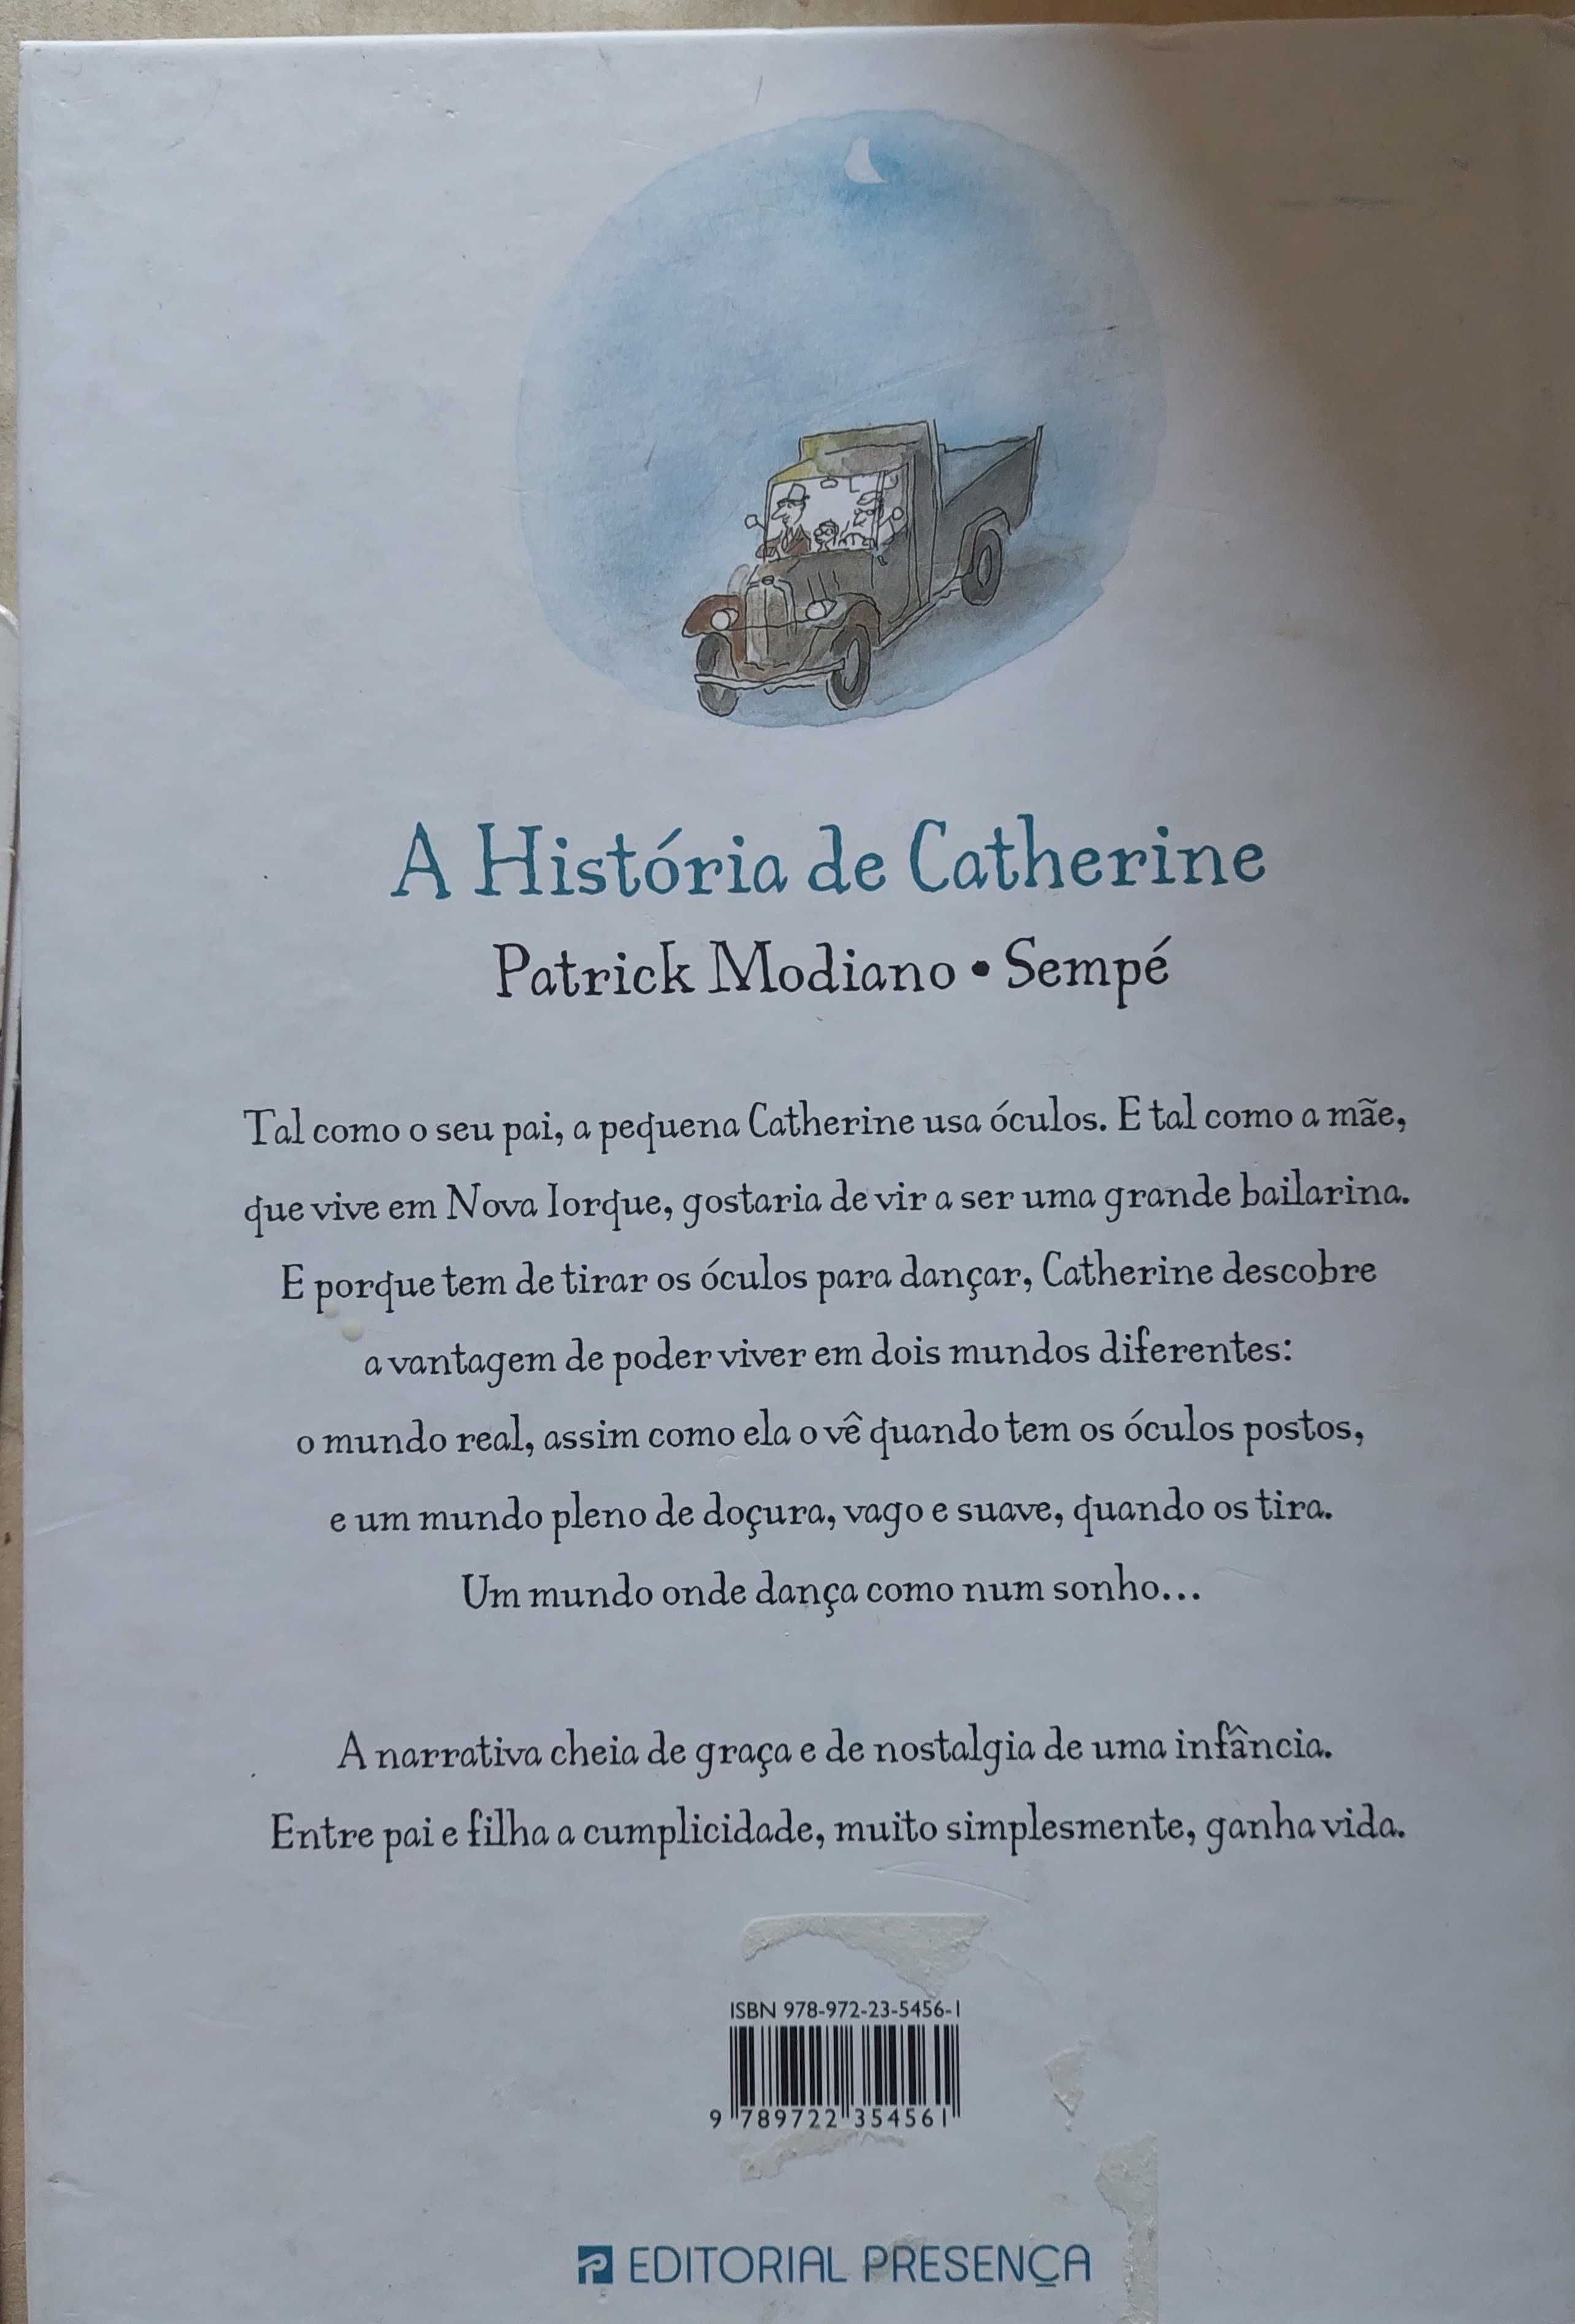 Livro "A História de Catherine" de Patrick Modiano